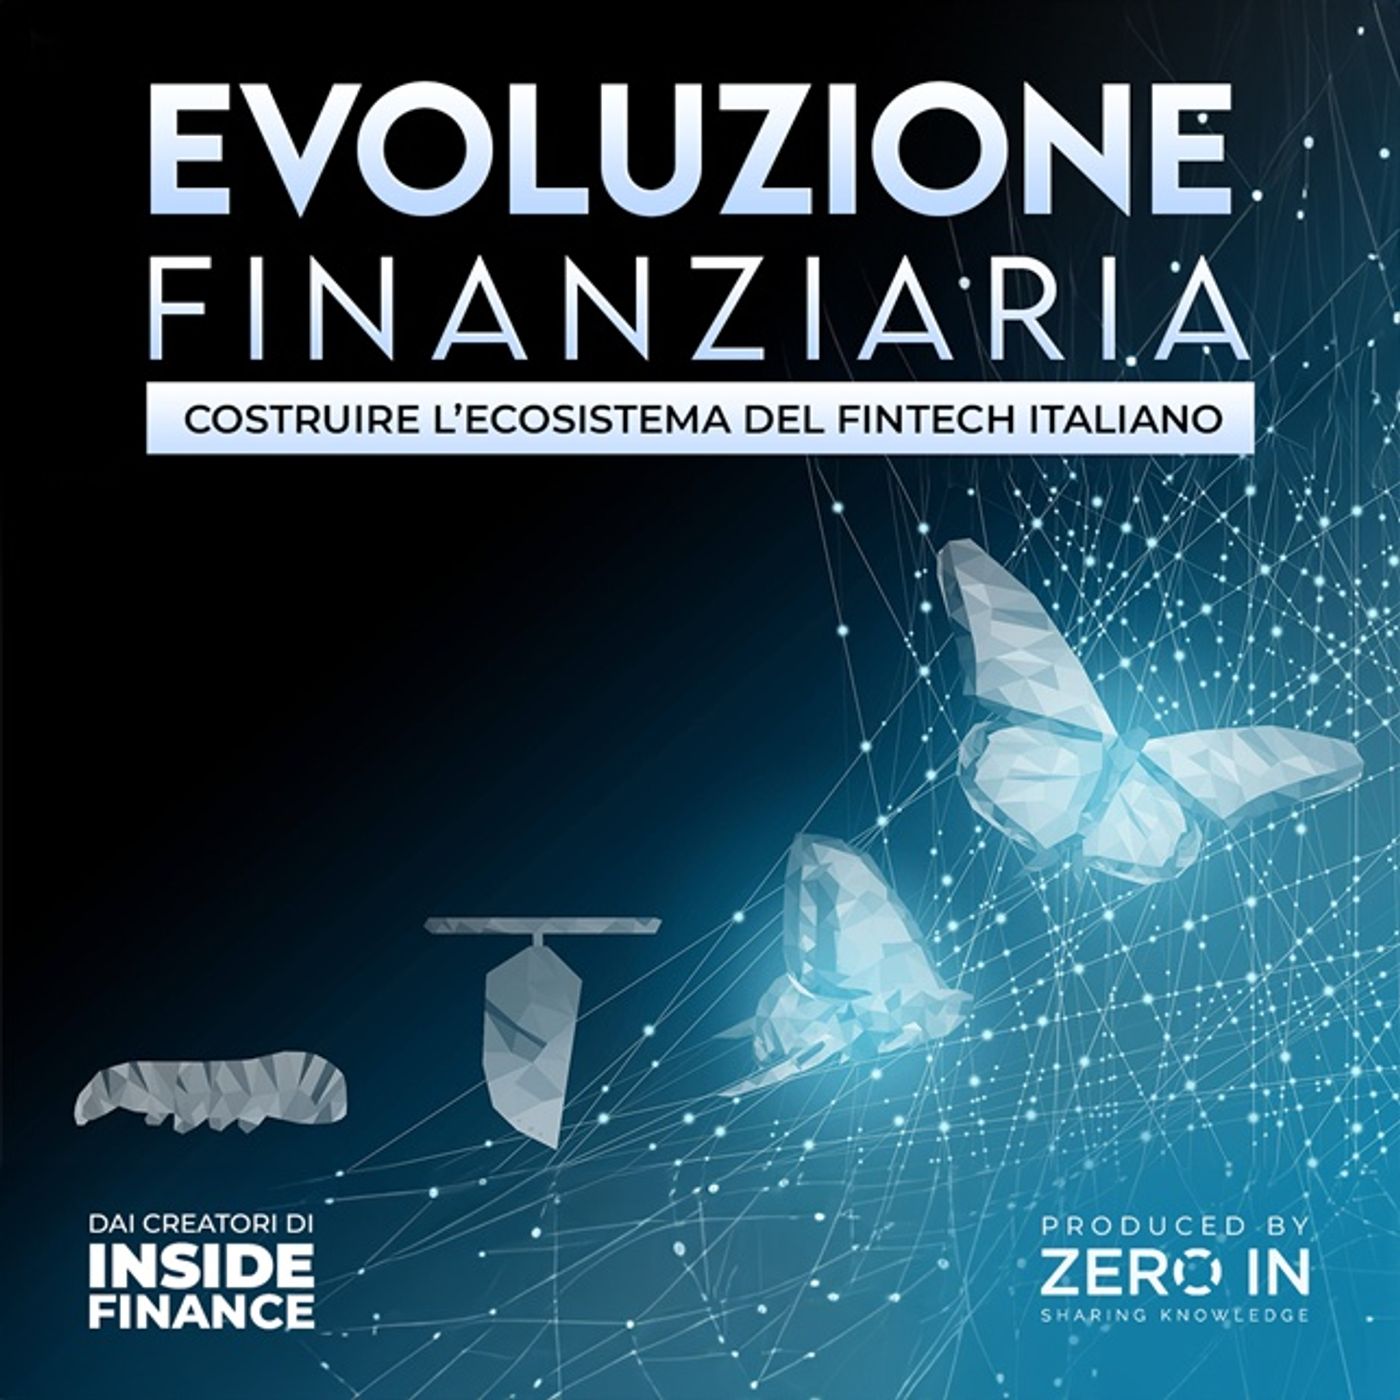 Estratto - Dibattito dell'evento di lancio del progetto "Evoluzione Finanziaria - Costruire l'Ecosistema del Fintech Italiano